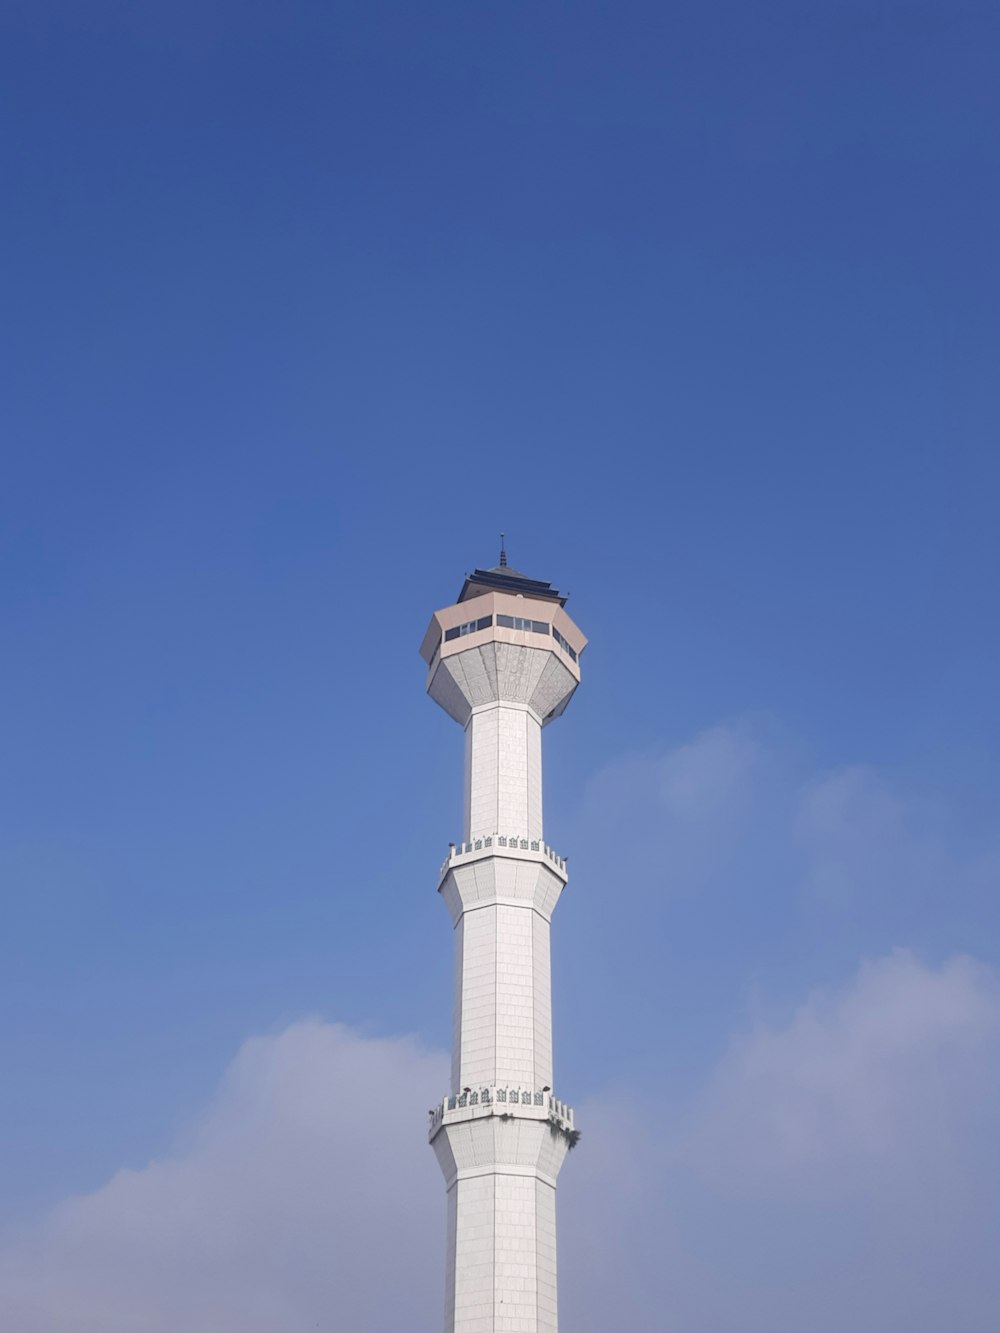 uma torre branca alta com um relógio no topo